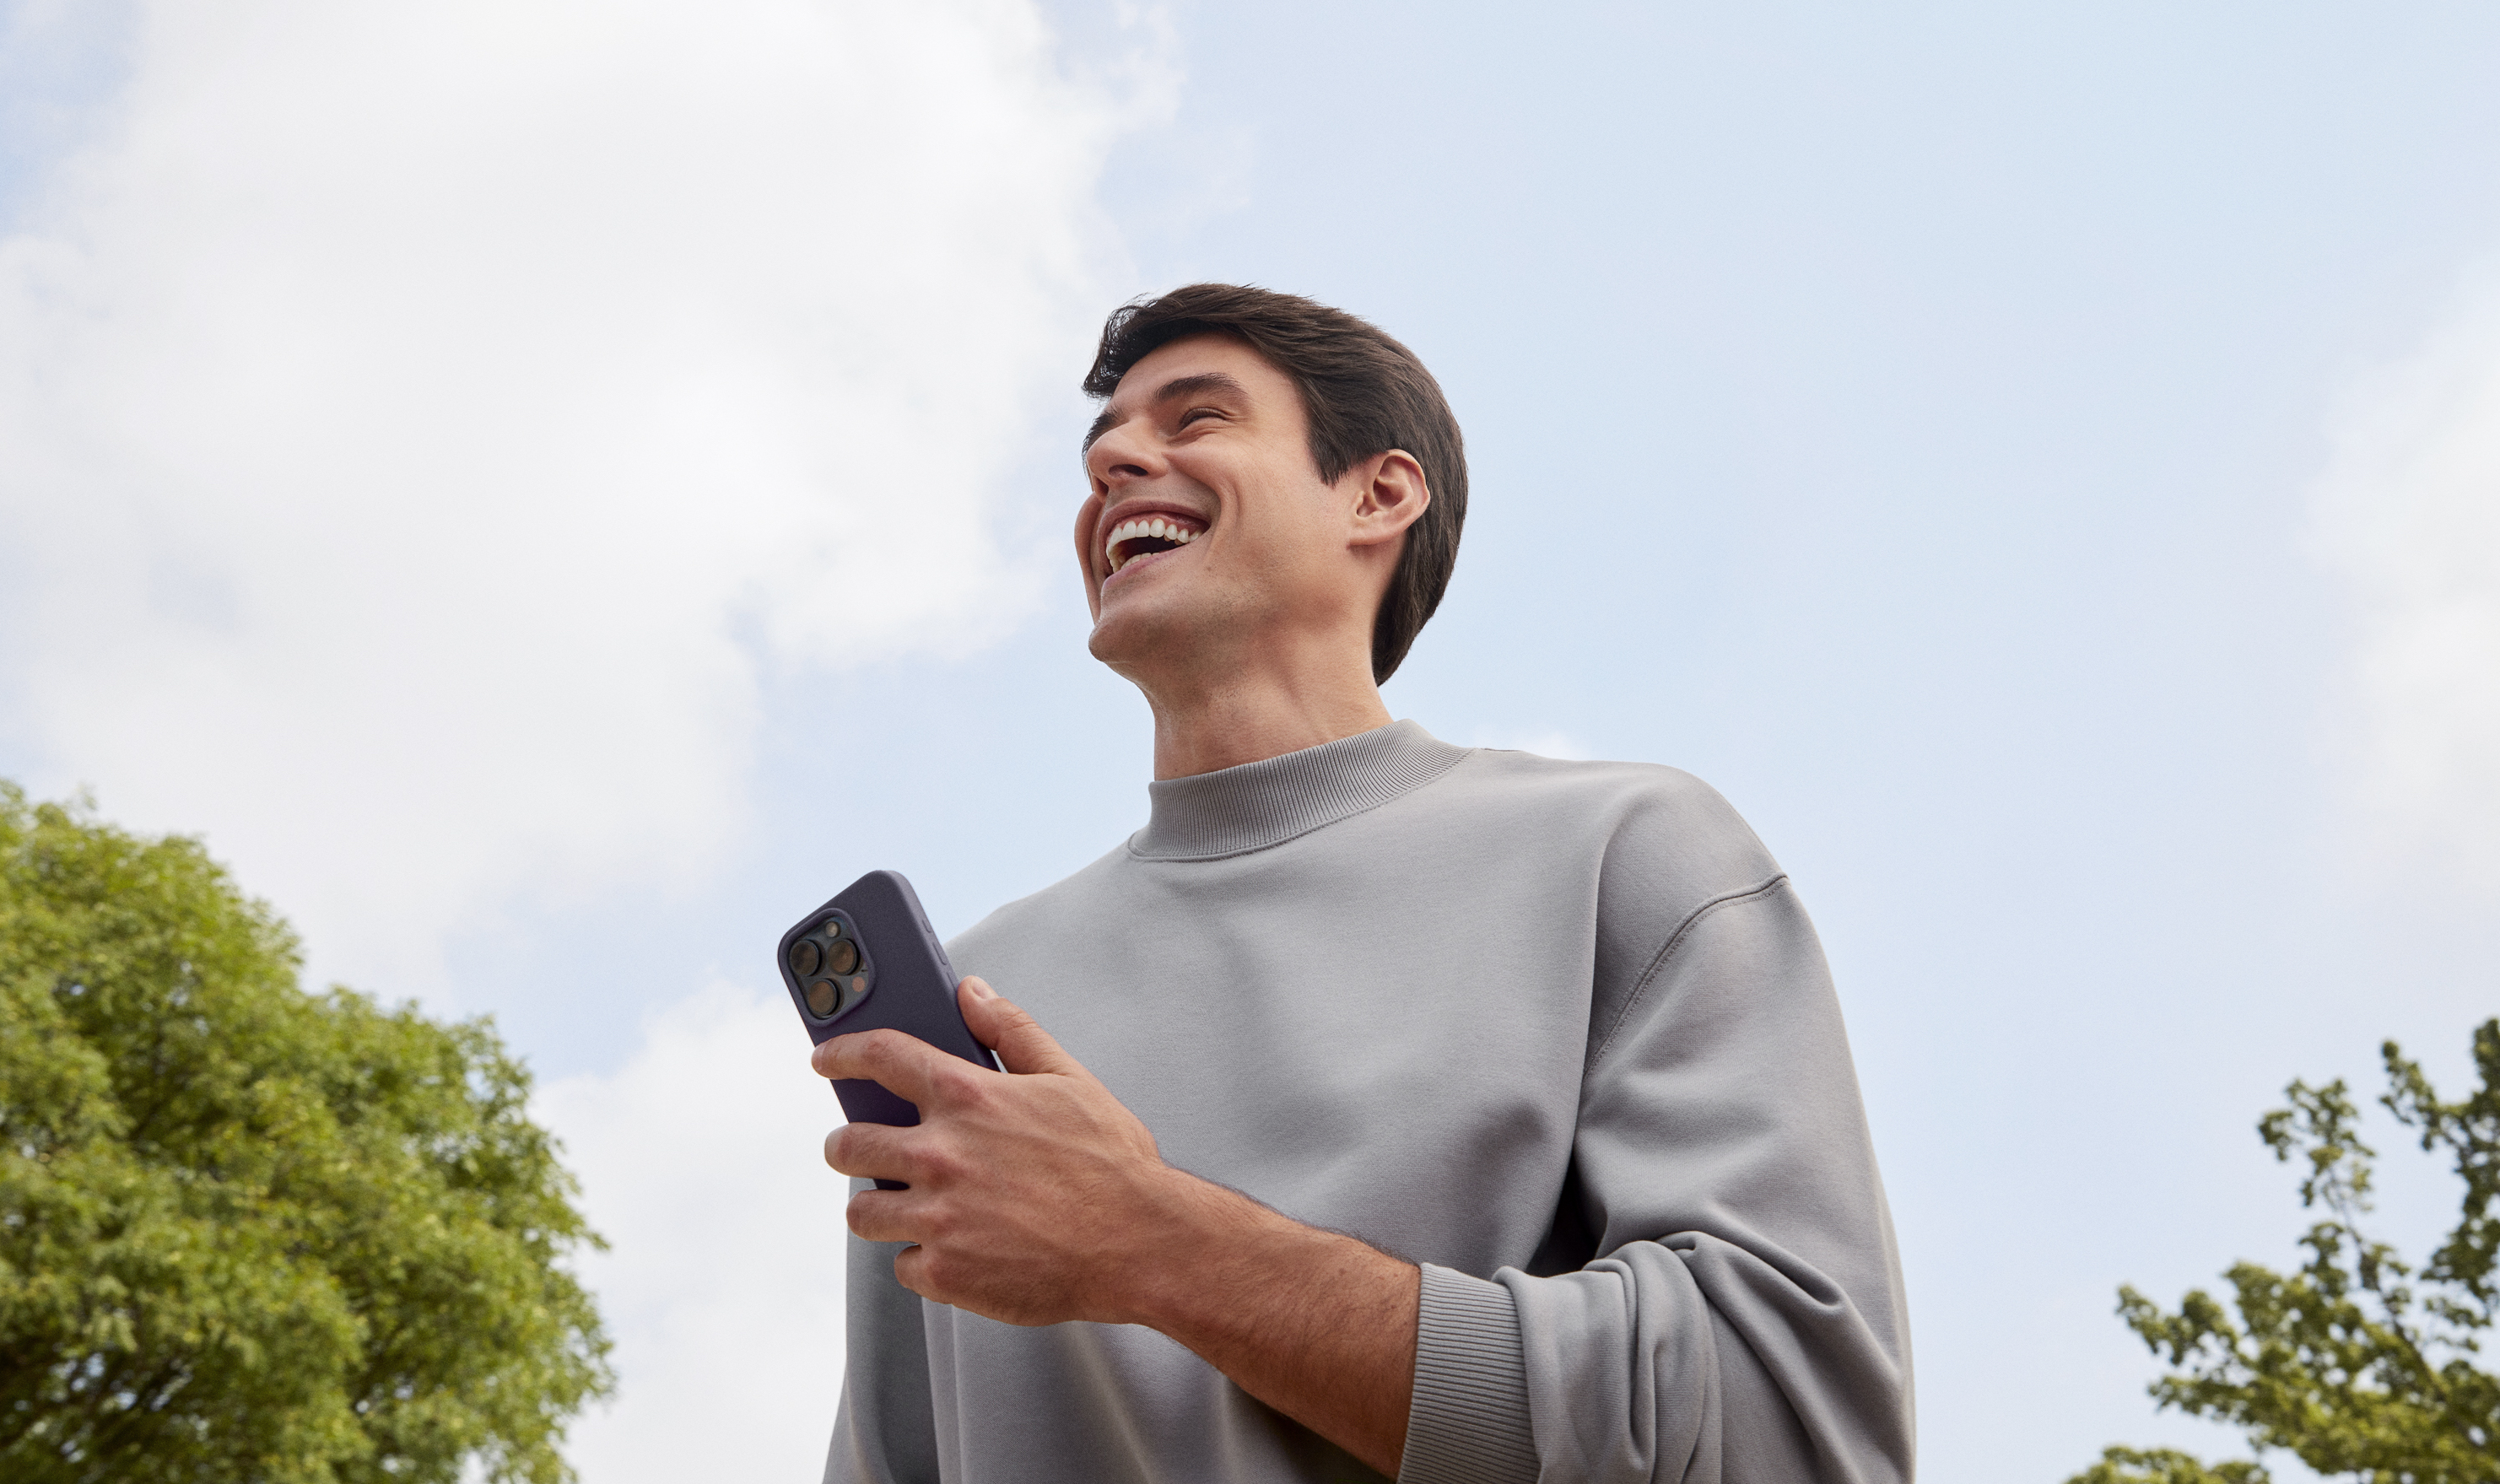 Foto de um homem branco, com uma camiseta cinza de gola alta e um celular na mão. Ele está sorrindo.